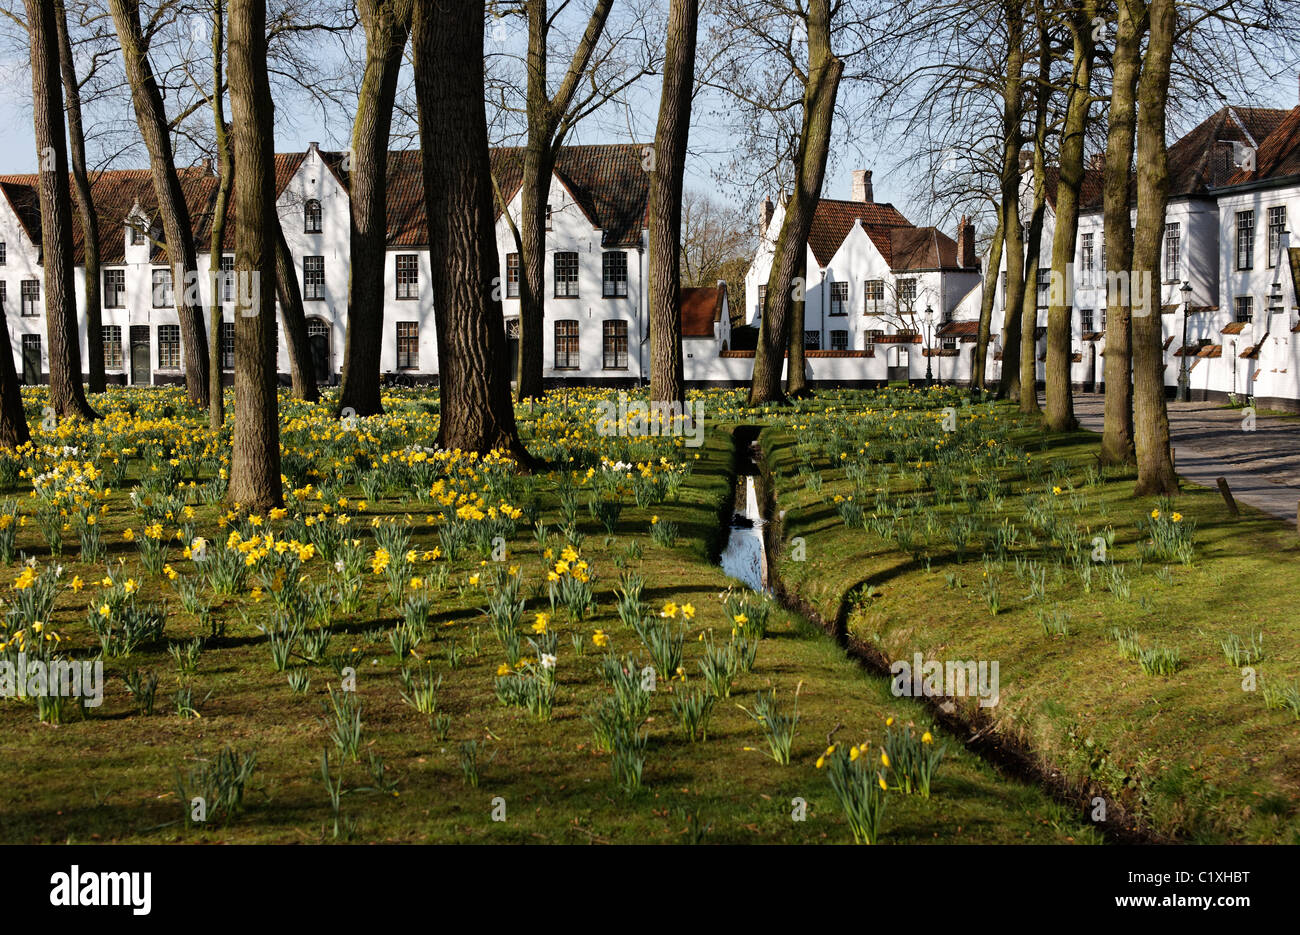 Case al beghinaggio di Bruges, Belgio Foto Stock